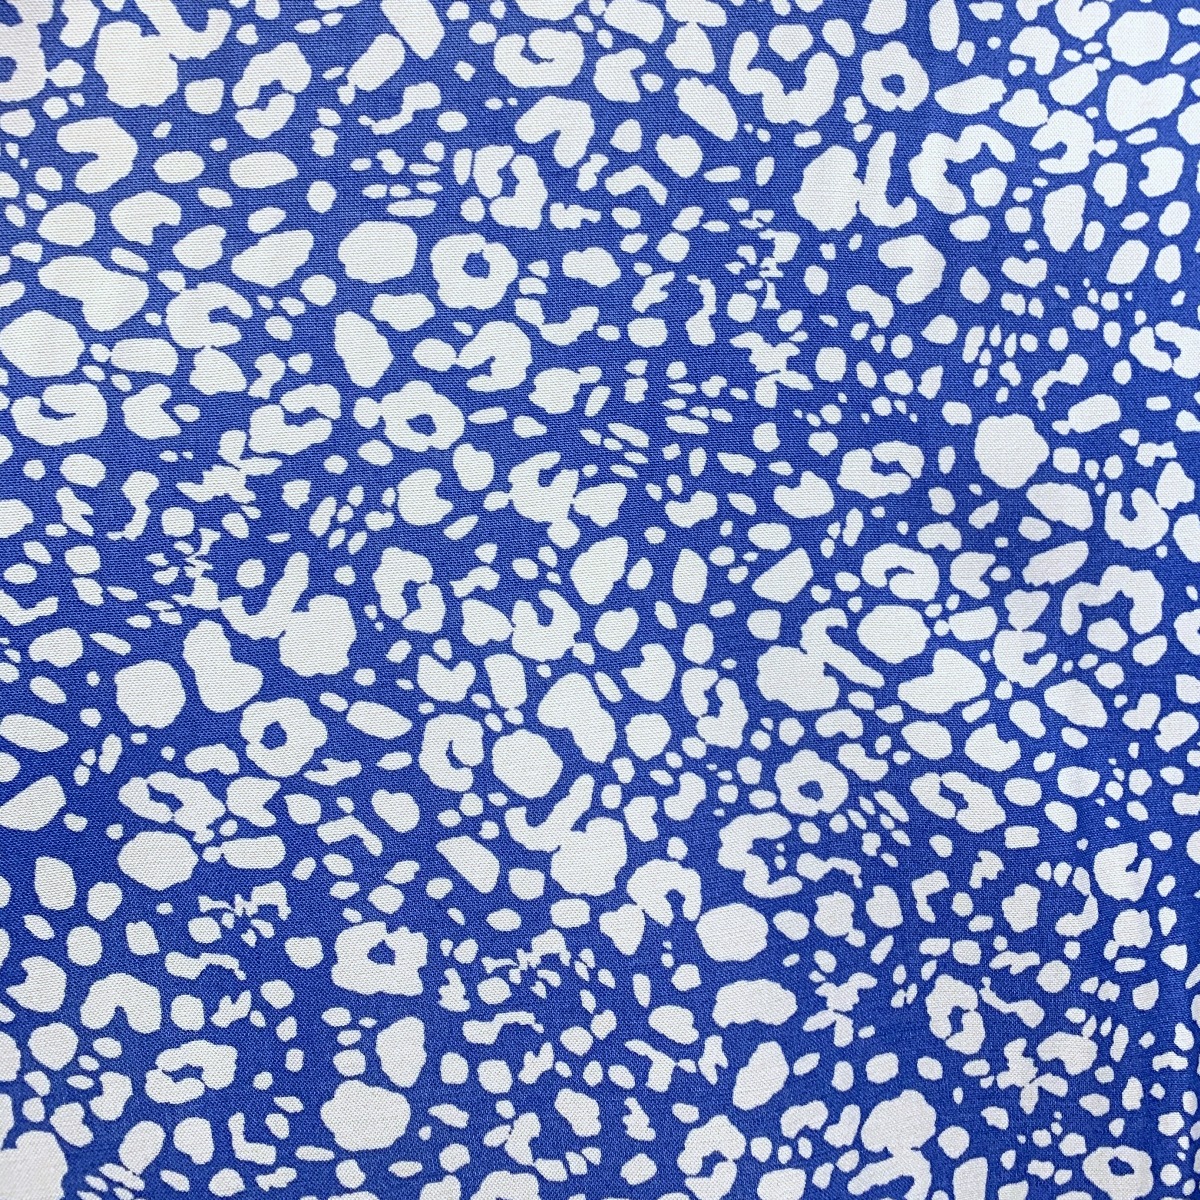 Lightweight Viscose Rayon Fabric | Artist's Dress - Blue Abstract